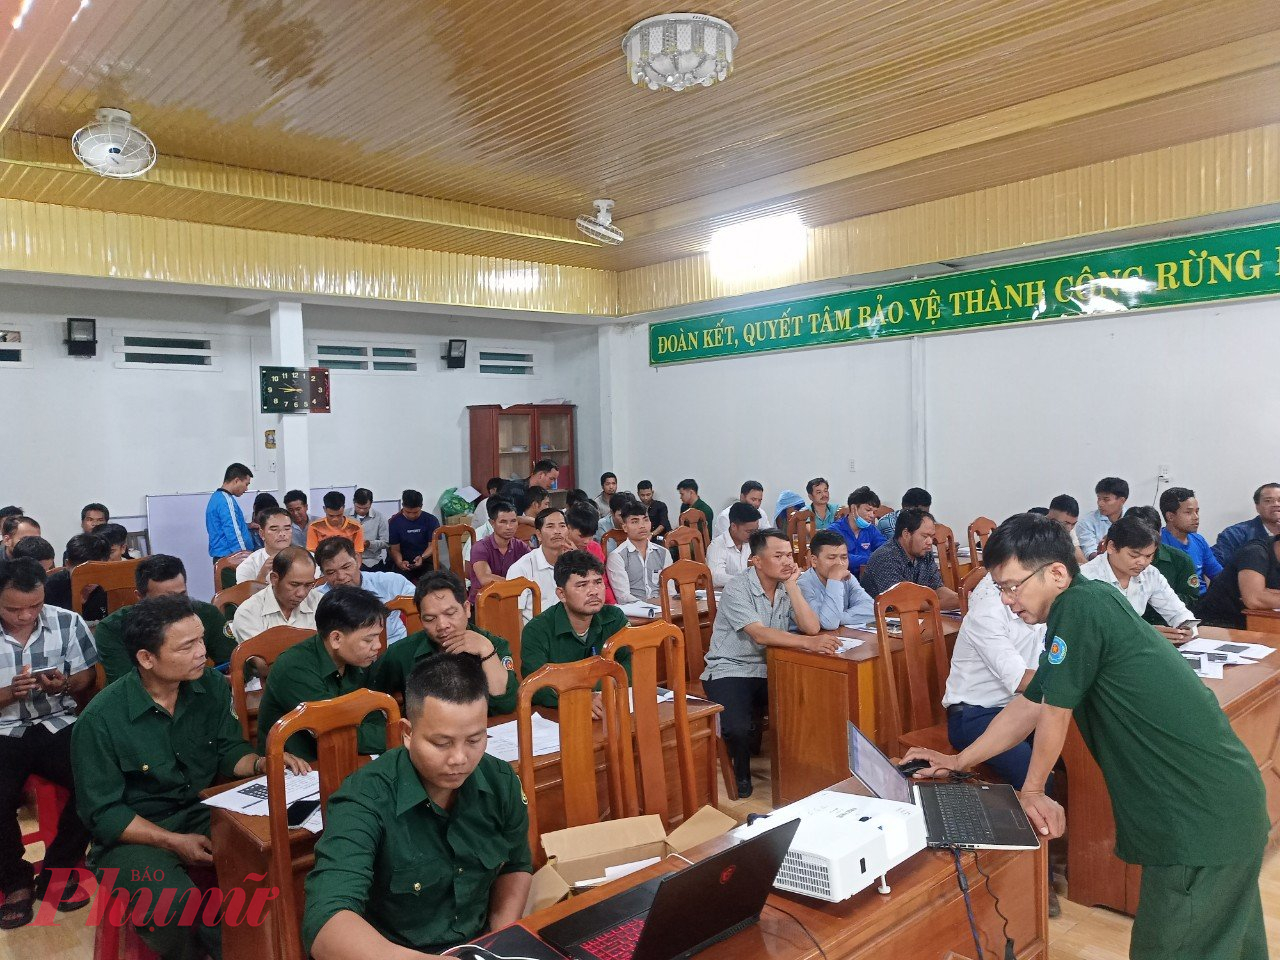 Dù được Chính phủ cho thí điểm kinh doanh tín chỉ các bon nhưng đến nay tỉnh Quảng Nam vẫn chưa thực hiện được vì gặp nhiều vướng mắc theo quy định của pháp luật